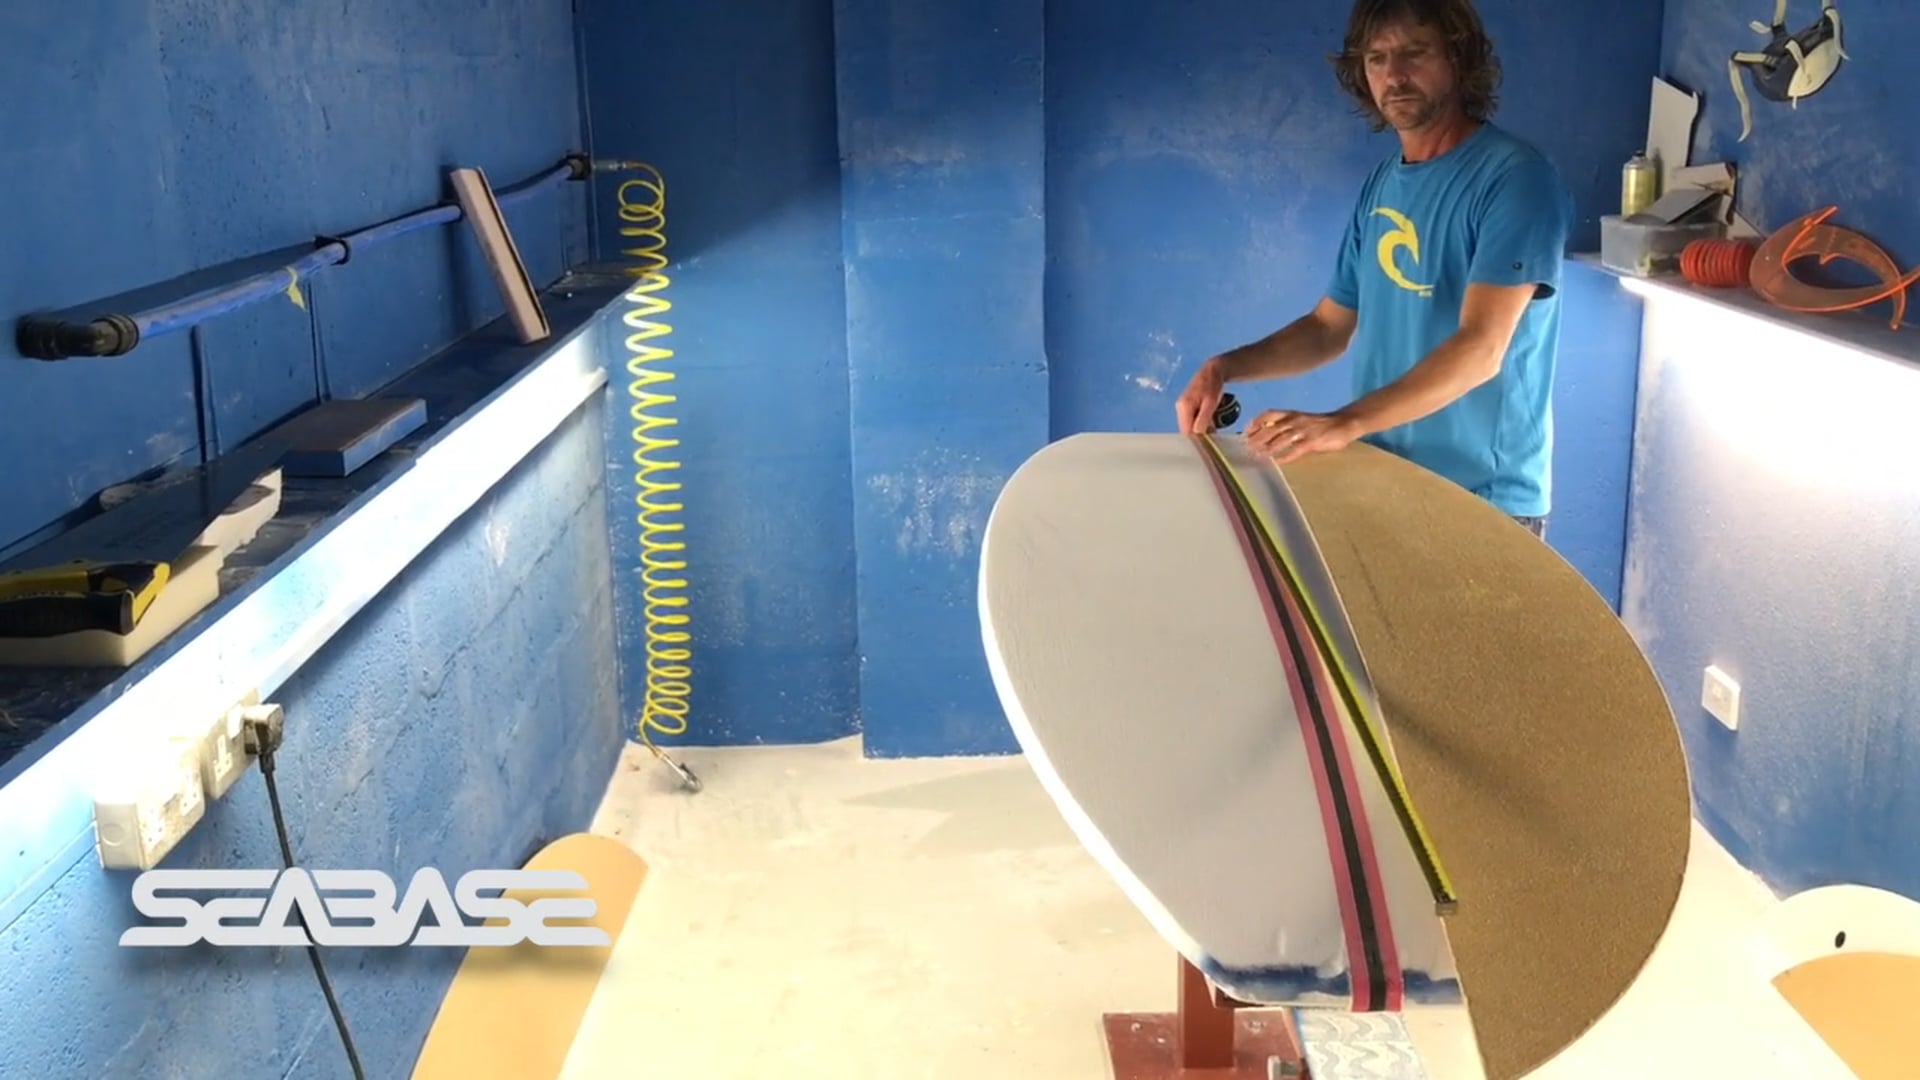 Templating a Surfboard | aquasport.tv